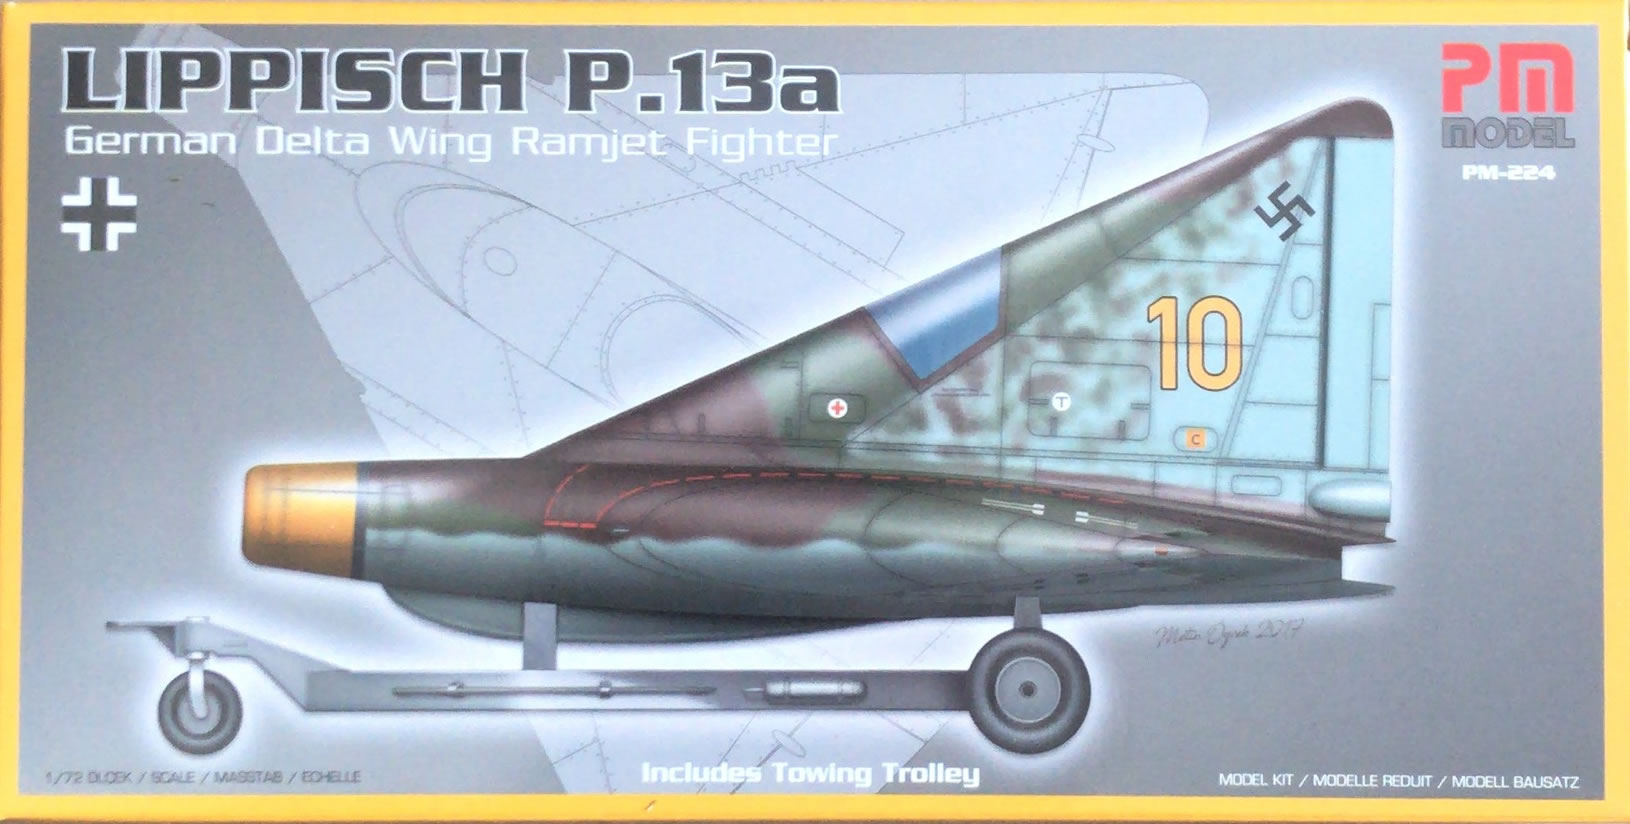 Lippisch P-13a